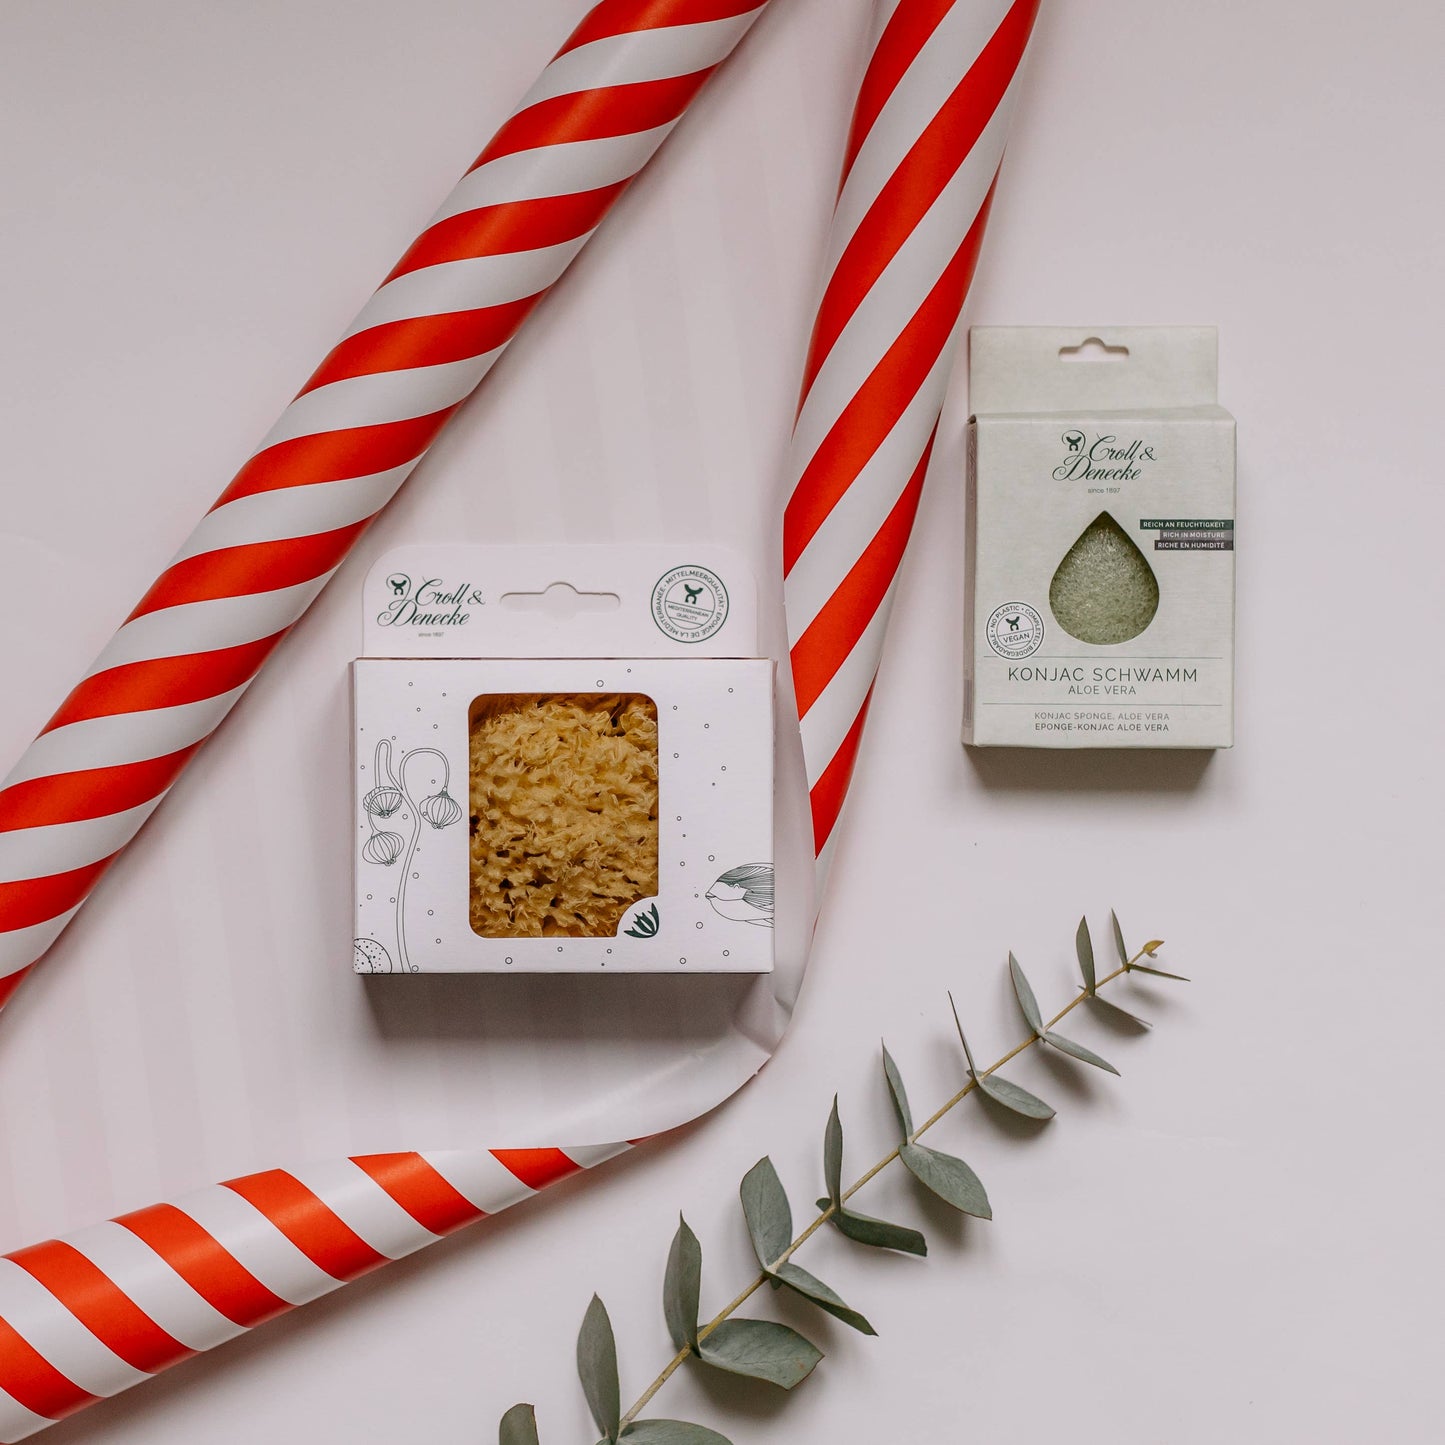 Natural sponge in environmentally friendly gift box, medium massage natural Xmas gift